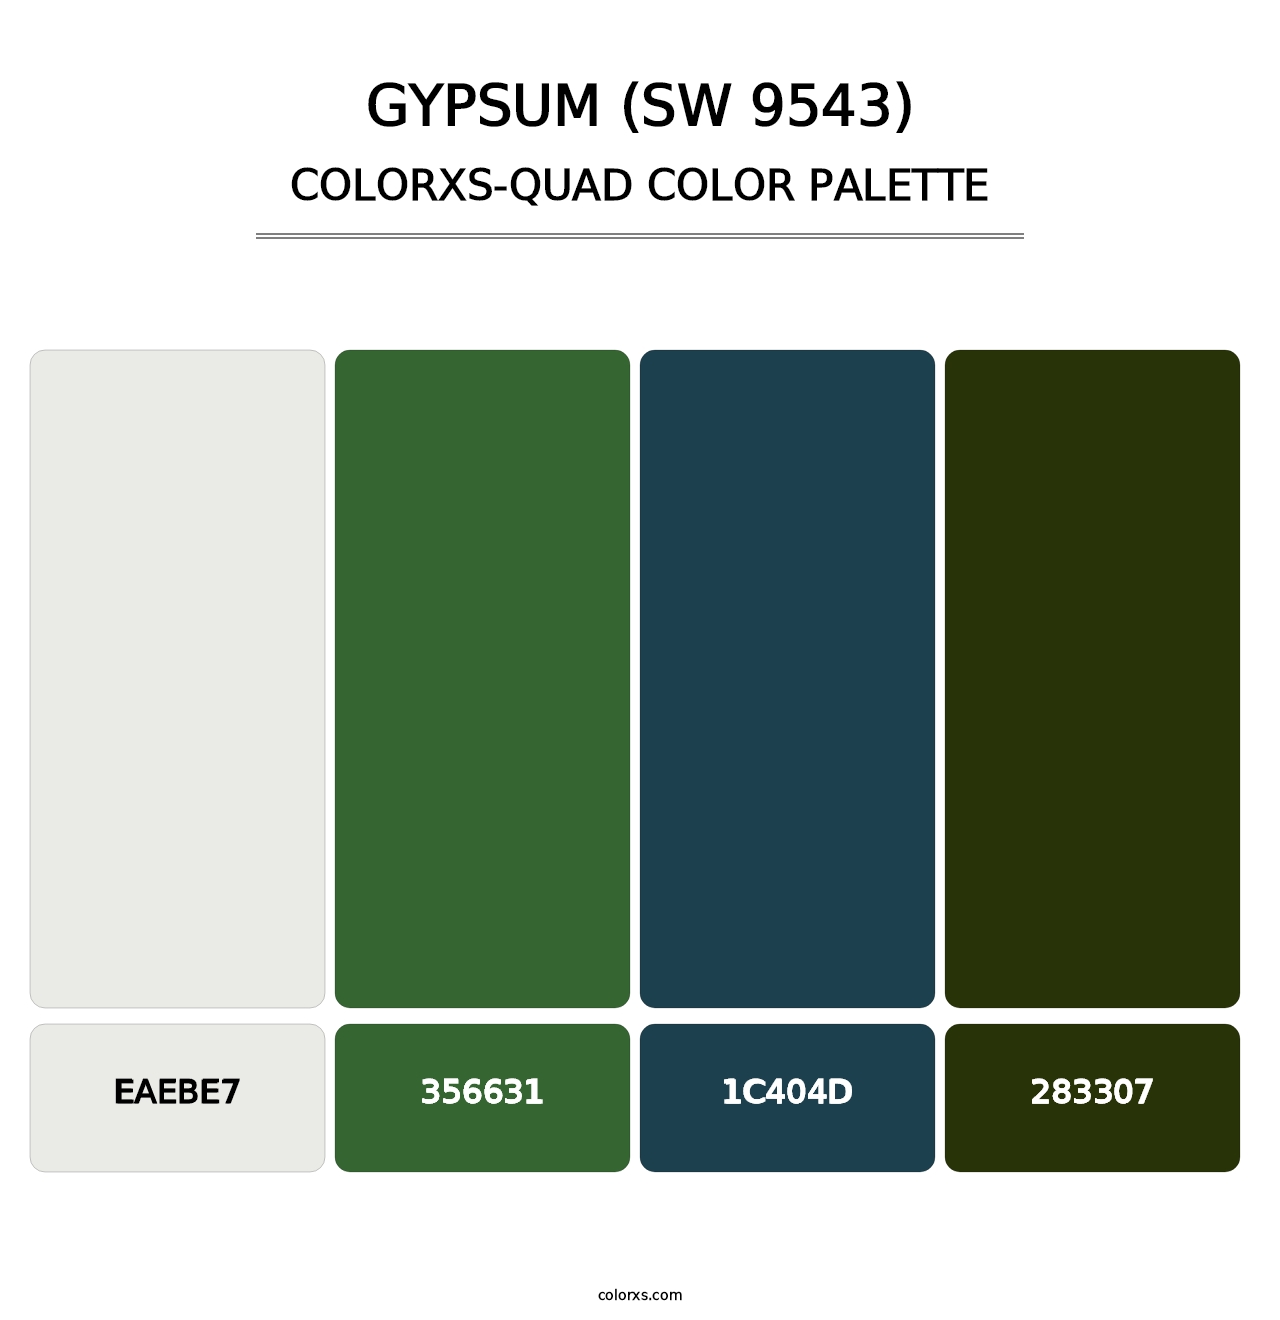 Gypsum (SW 9543) - Colorxs Quad Palette